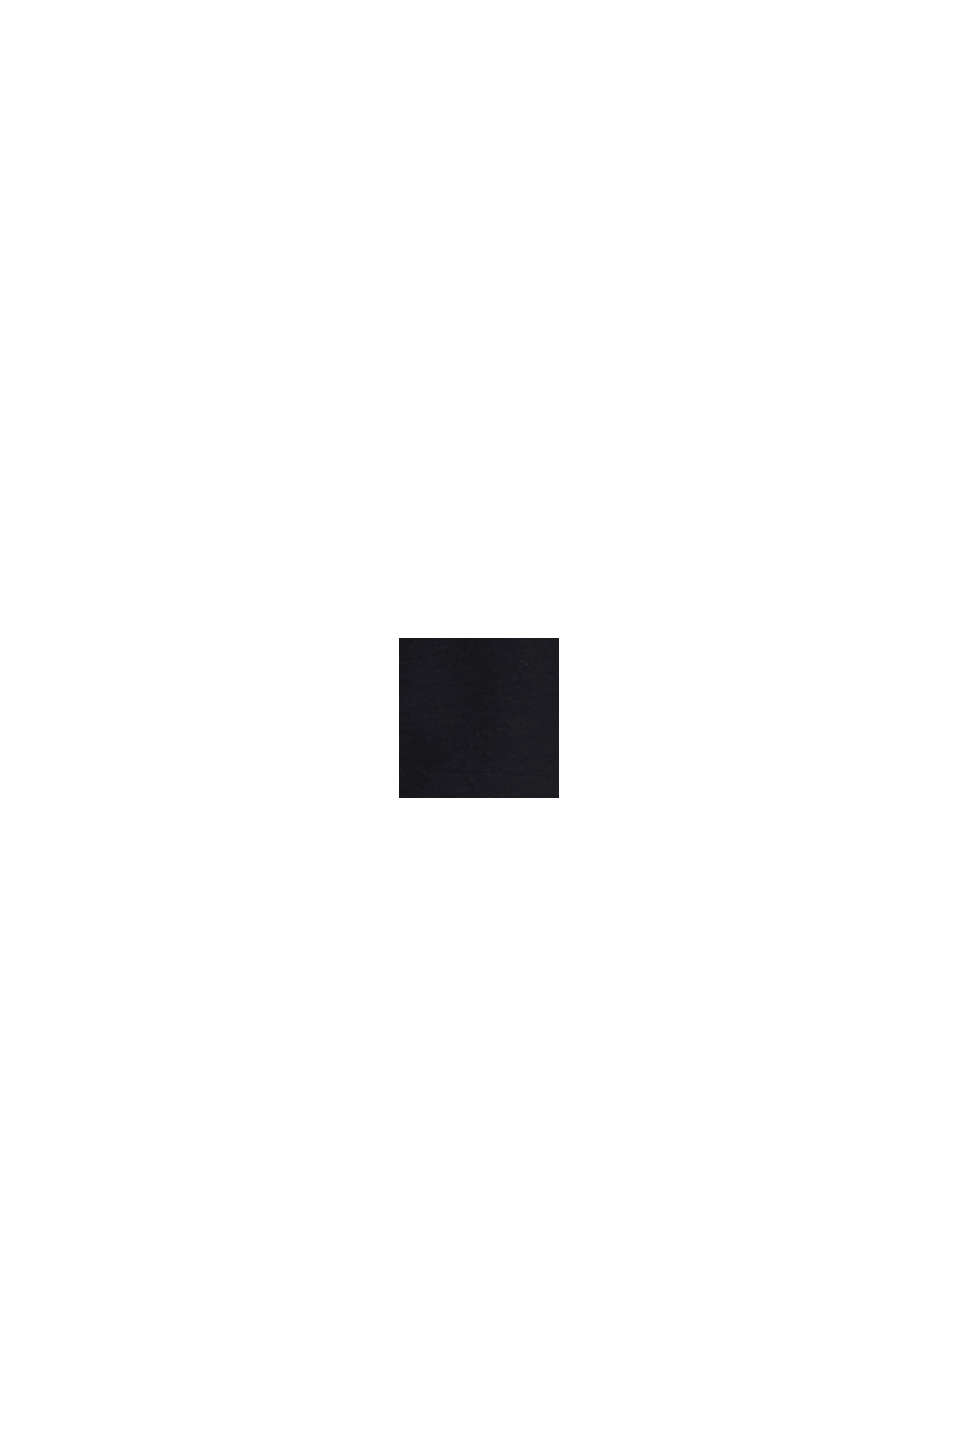 AMBIGRAM 方形印花 T 恤, BLACK, swatch